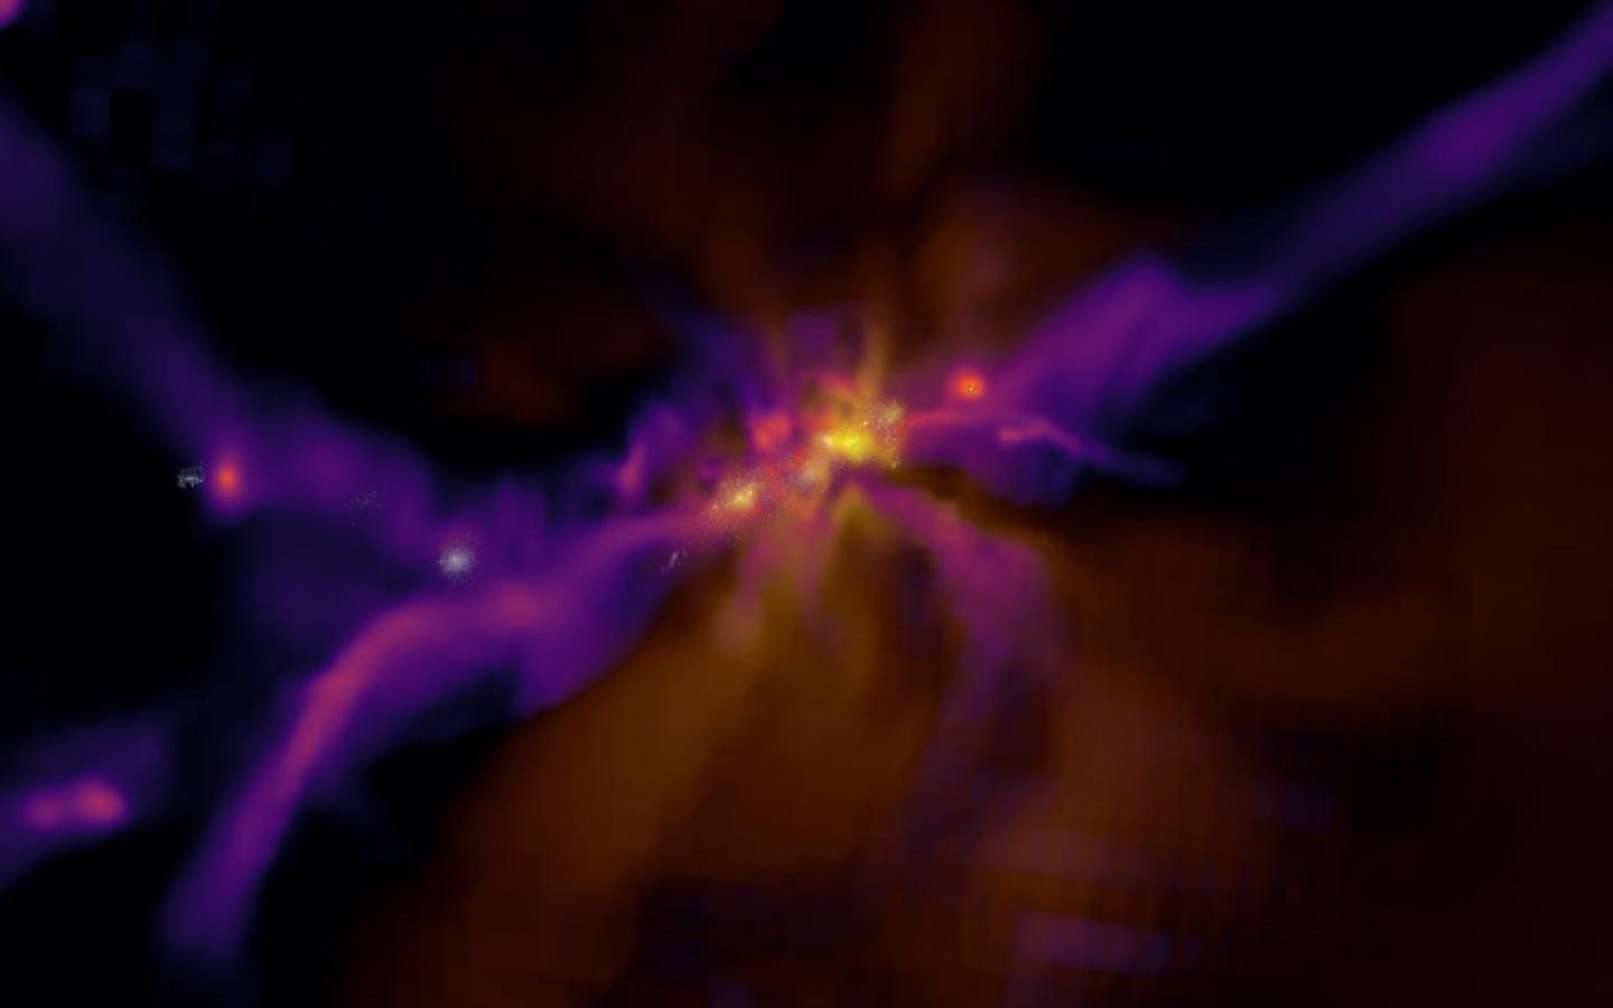 Une image extraite d'une simulation de la formation des premières étoiles et galaxies au moment de l'Aube cosmique. © Dr Harley Katz, Beecroft Fellow, Department of Physics, University of Oxford